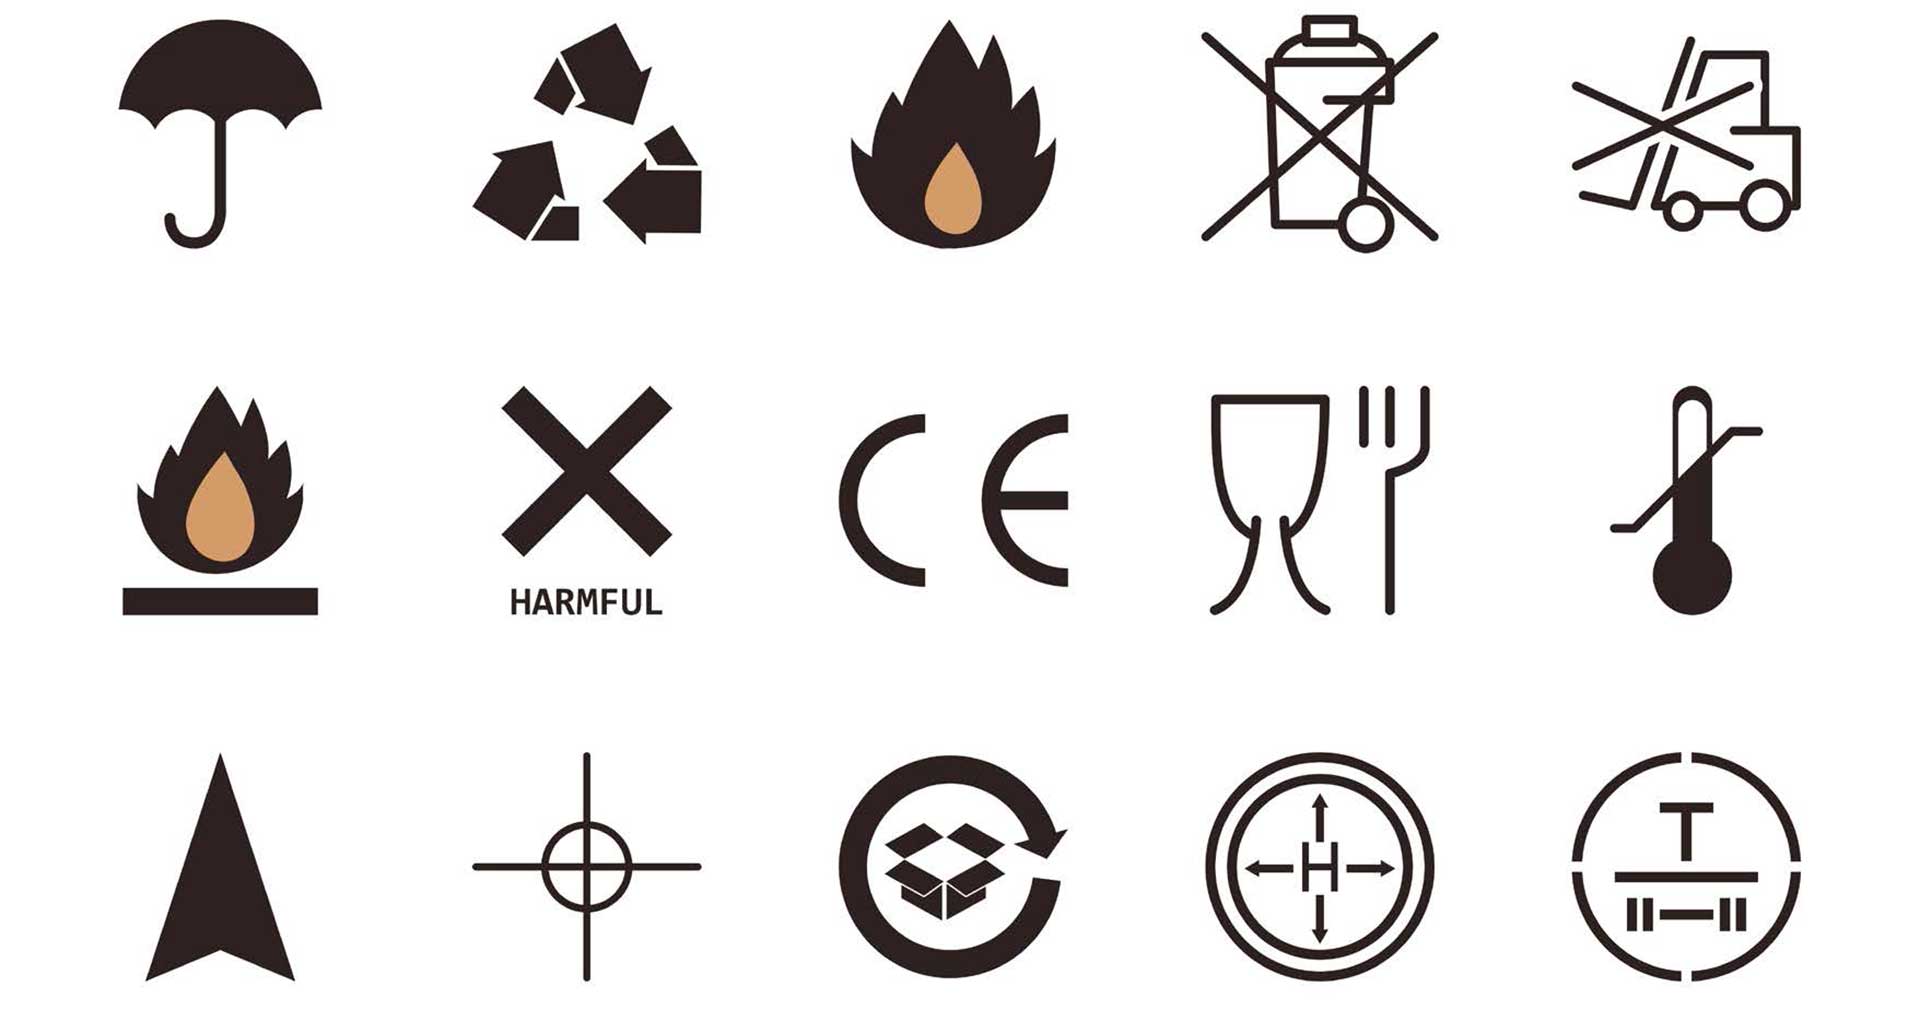 En samling ulike produktmerker, blant annet faresymboler, digital illustrasjon.